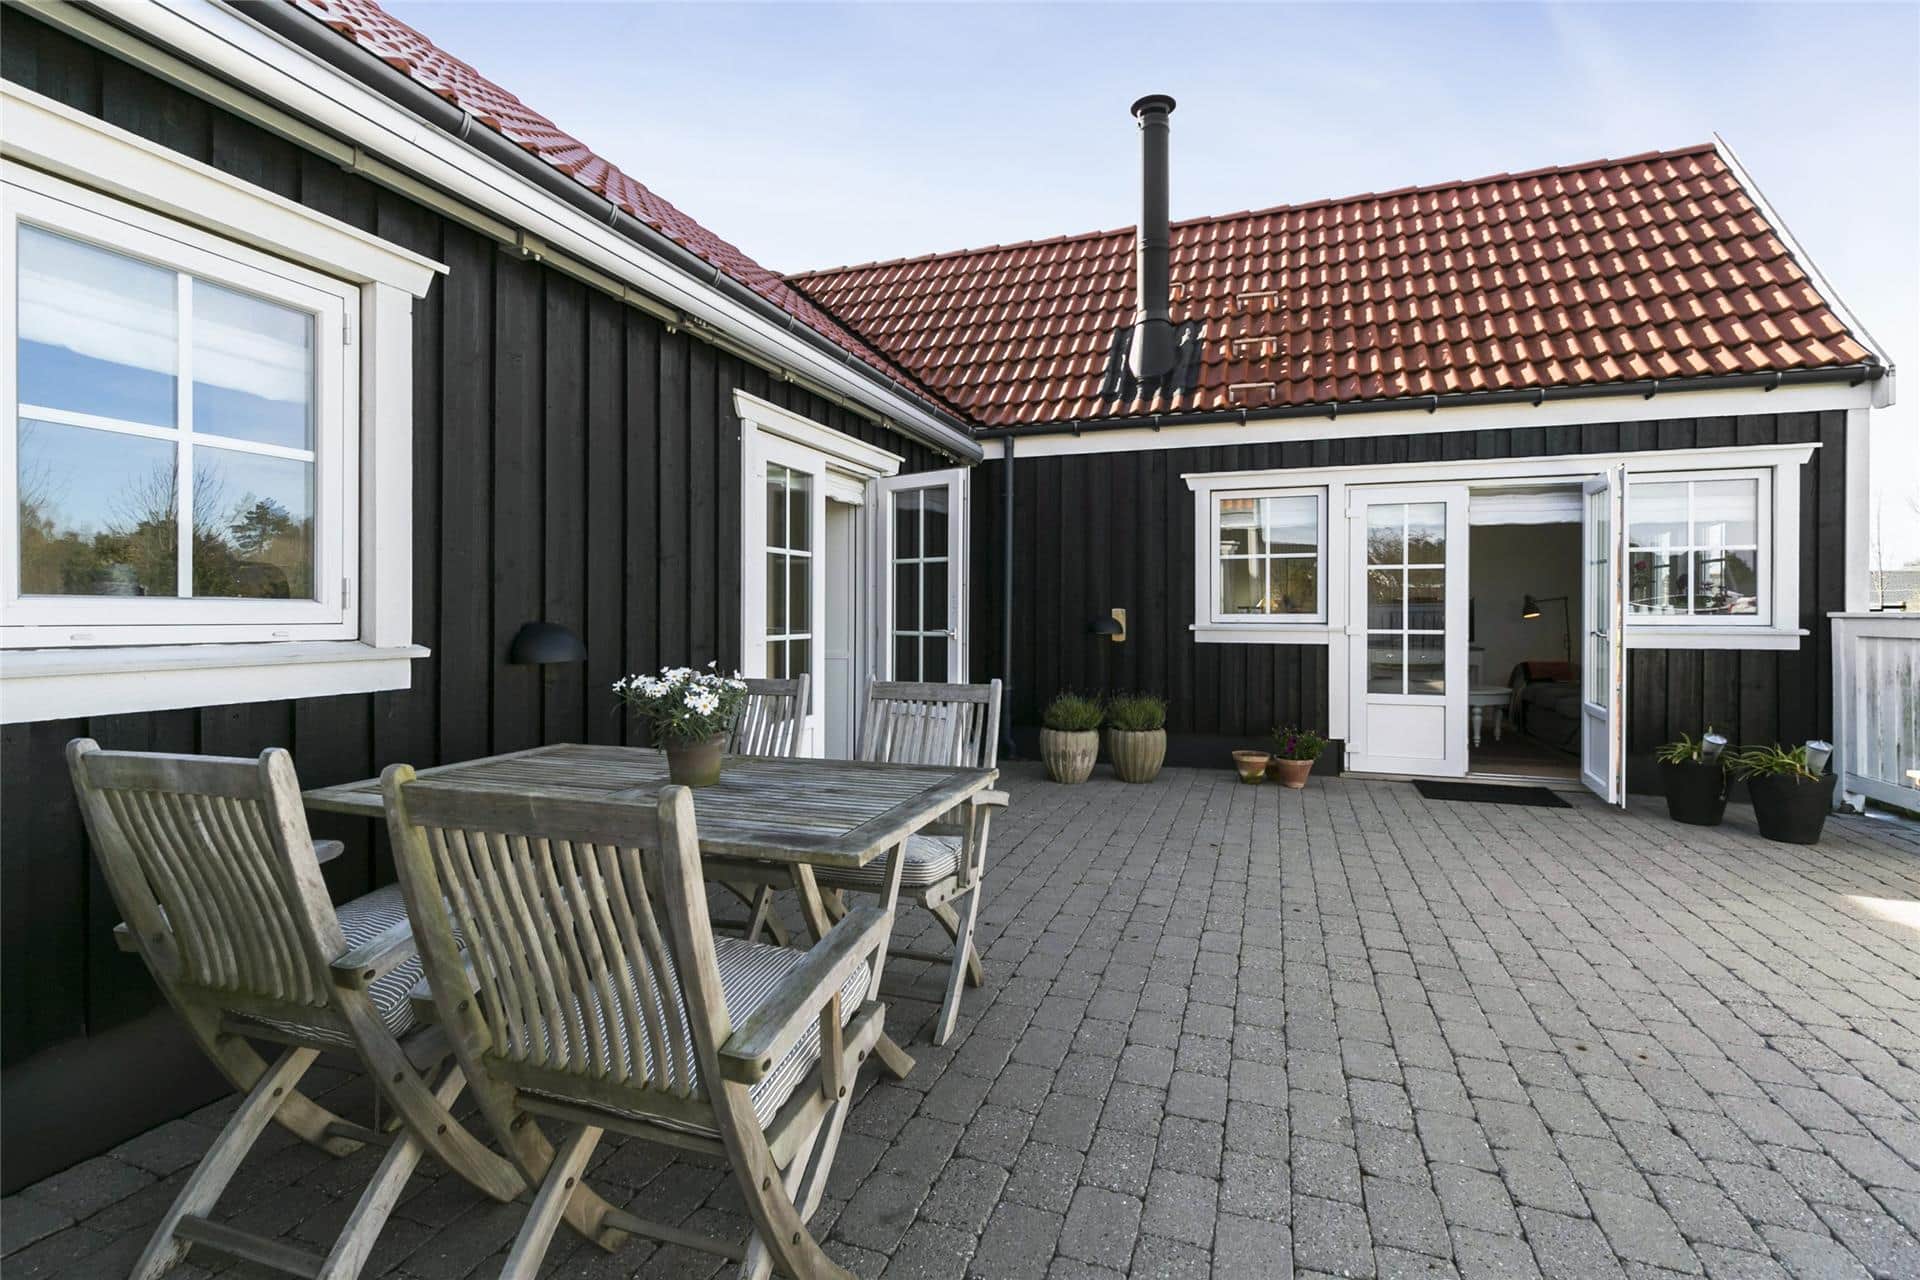 Bild 0-1336 Ferienhaus 1061-N, Lundebakken 1, DK - 3210 Vejby